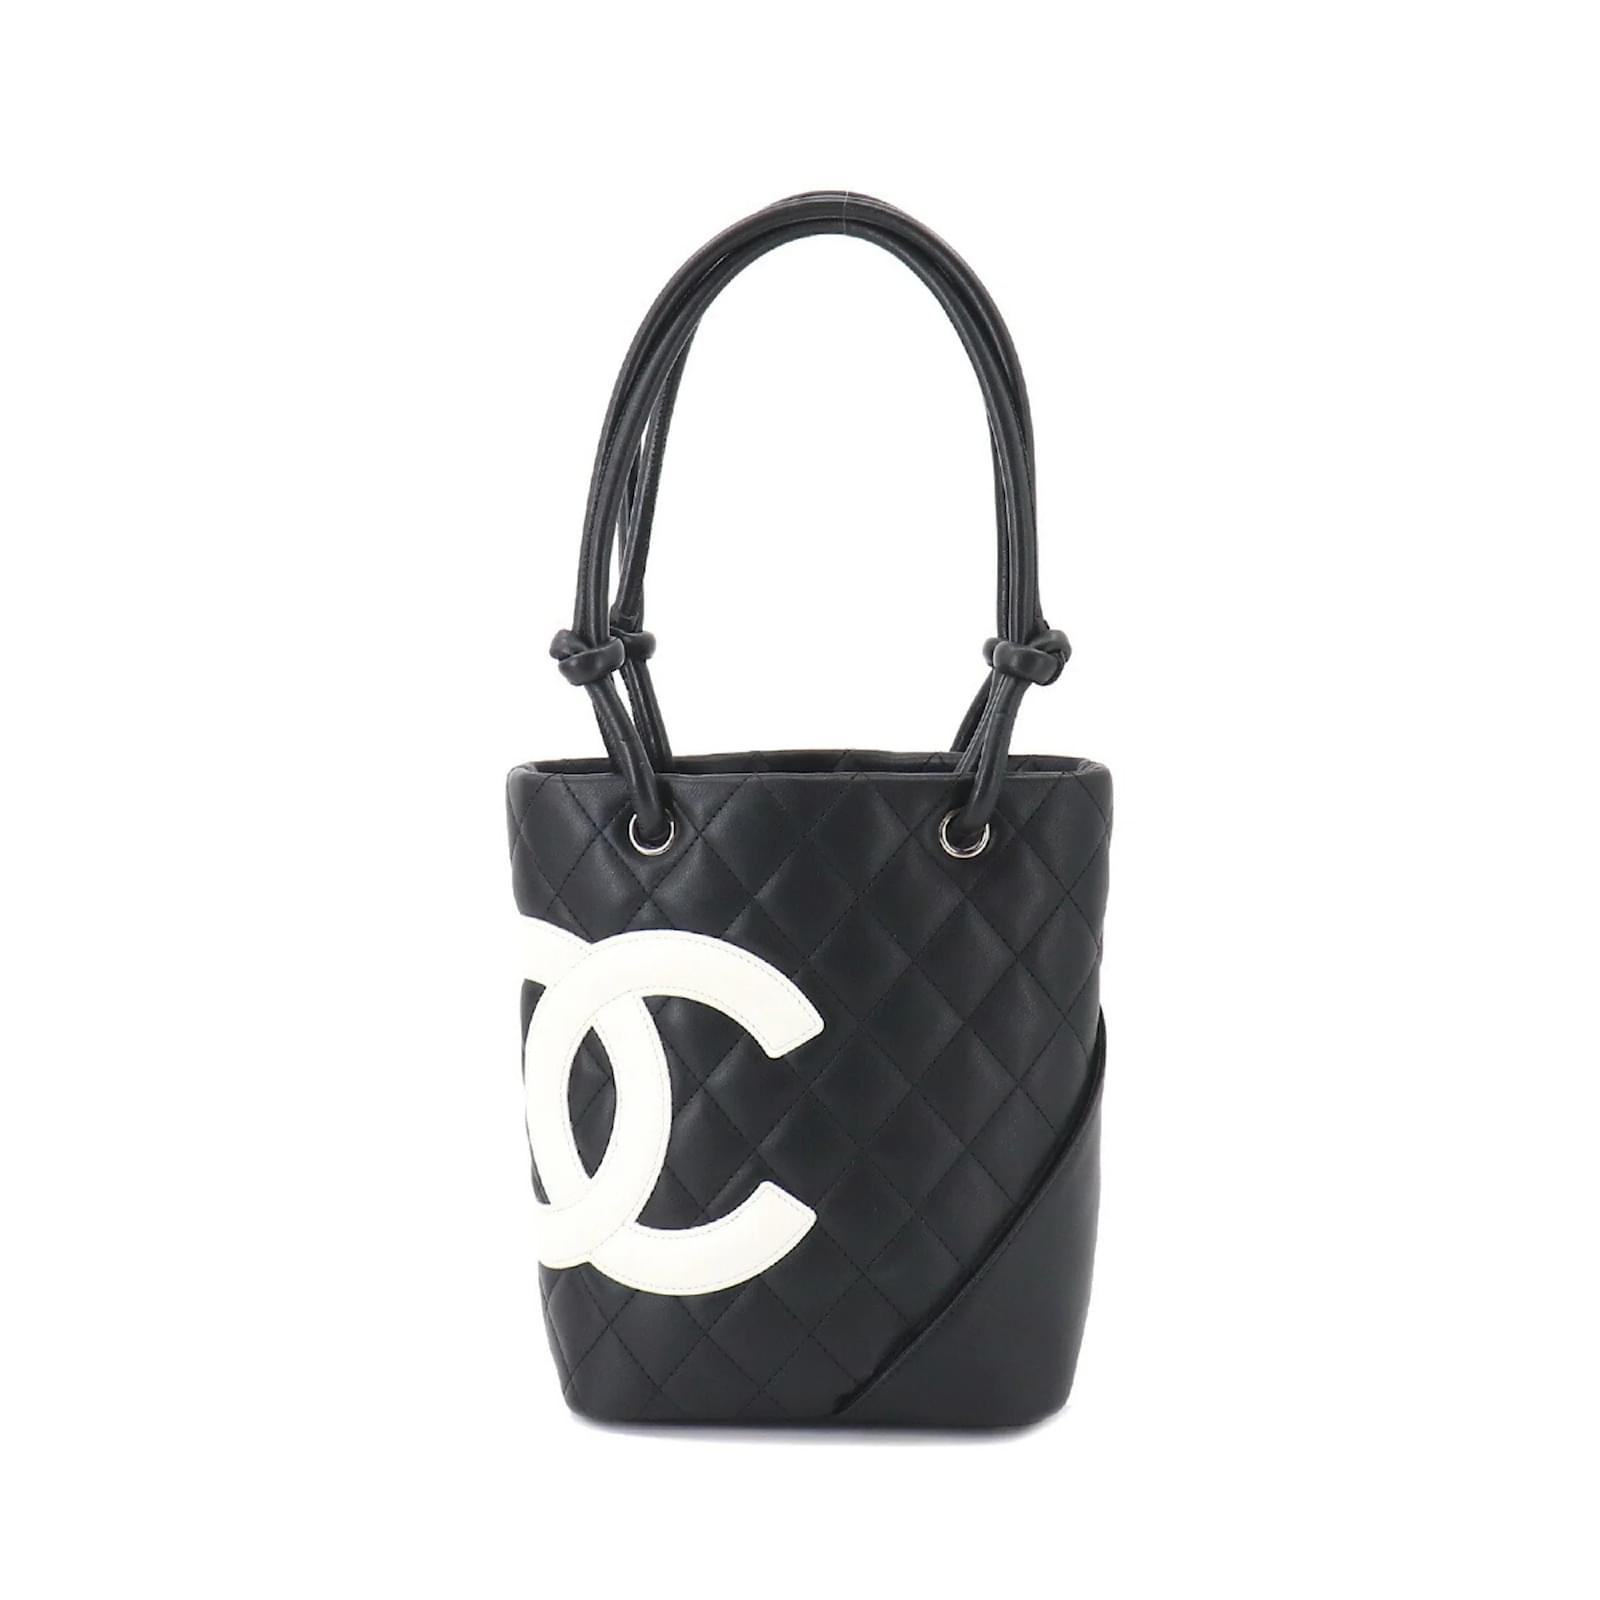 Chanel Cambon Ligne Shopper  Chanel cambon, Vintage chanel, Chanel